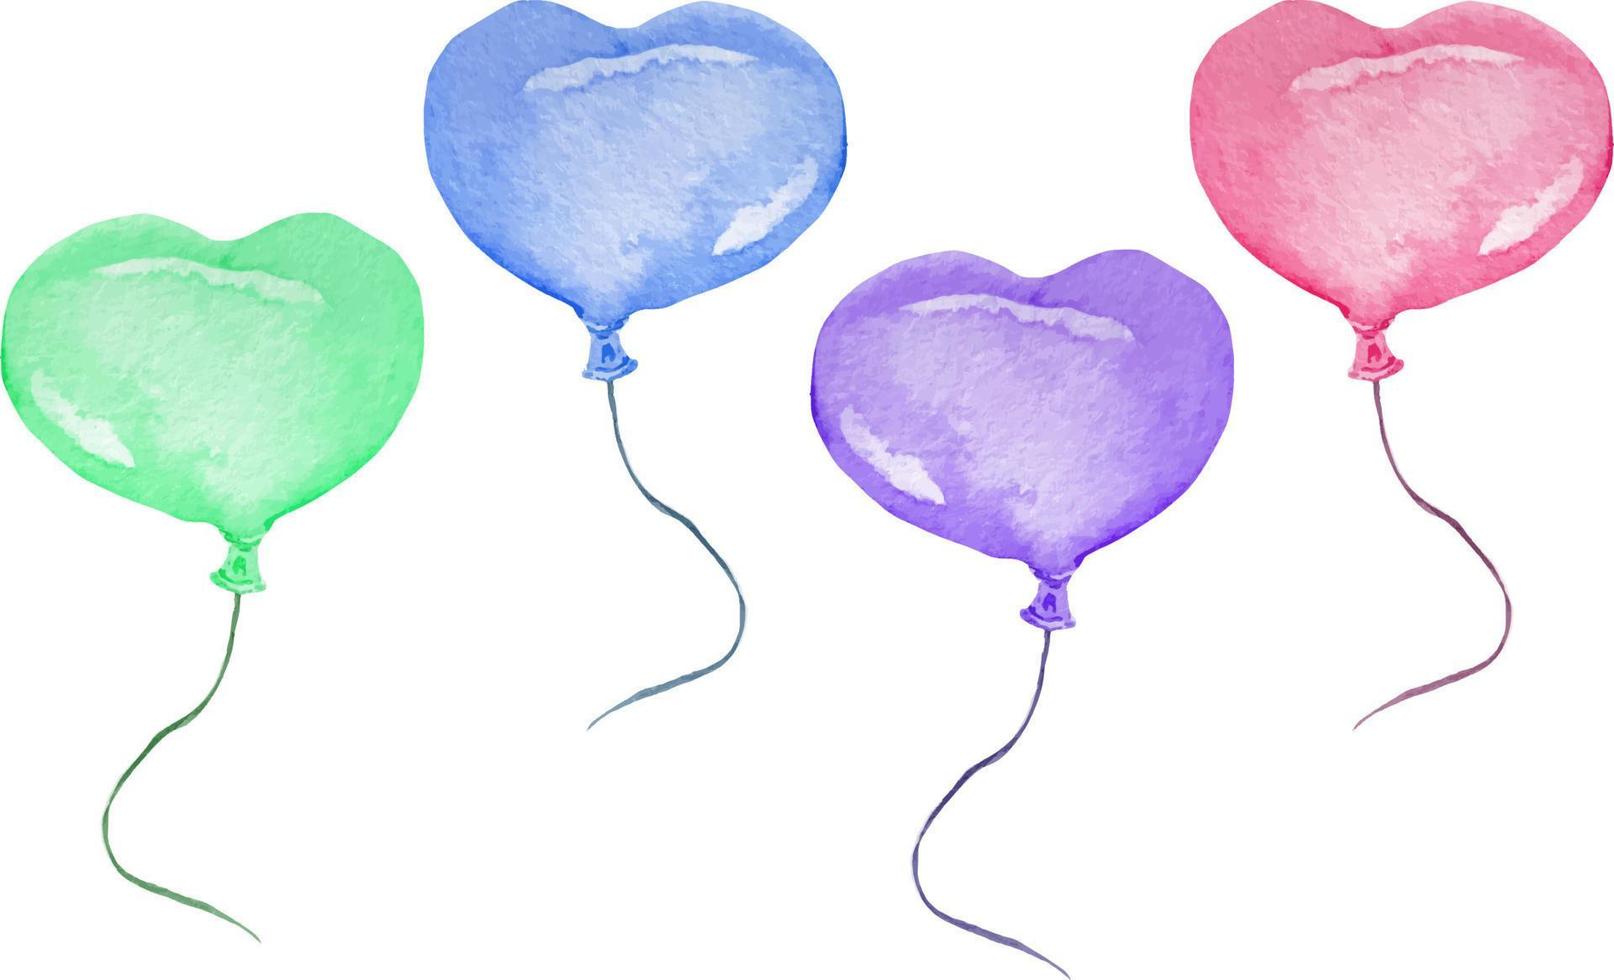 lindos globos de aire de color rosa brillante, púrpura, verde y azul de color agua en forma de corazón con hilo negro ondeando. vector